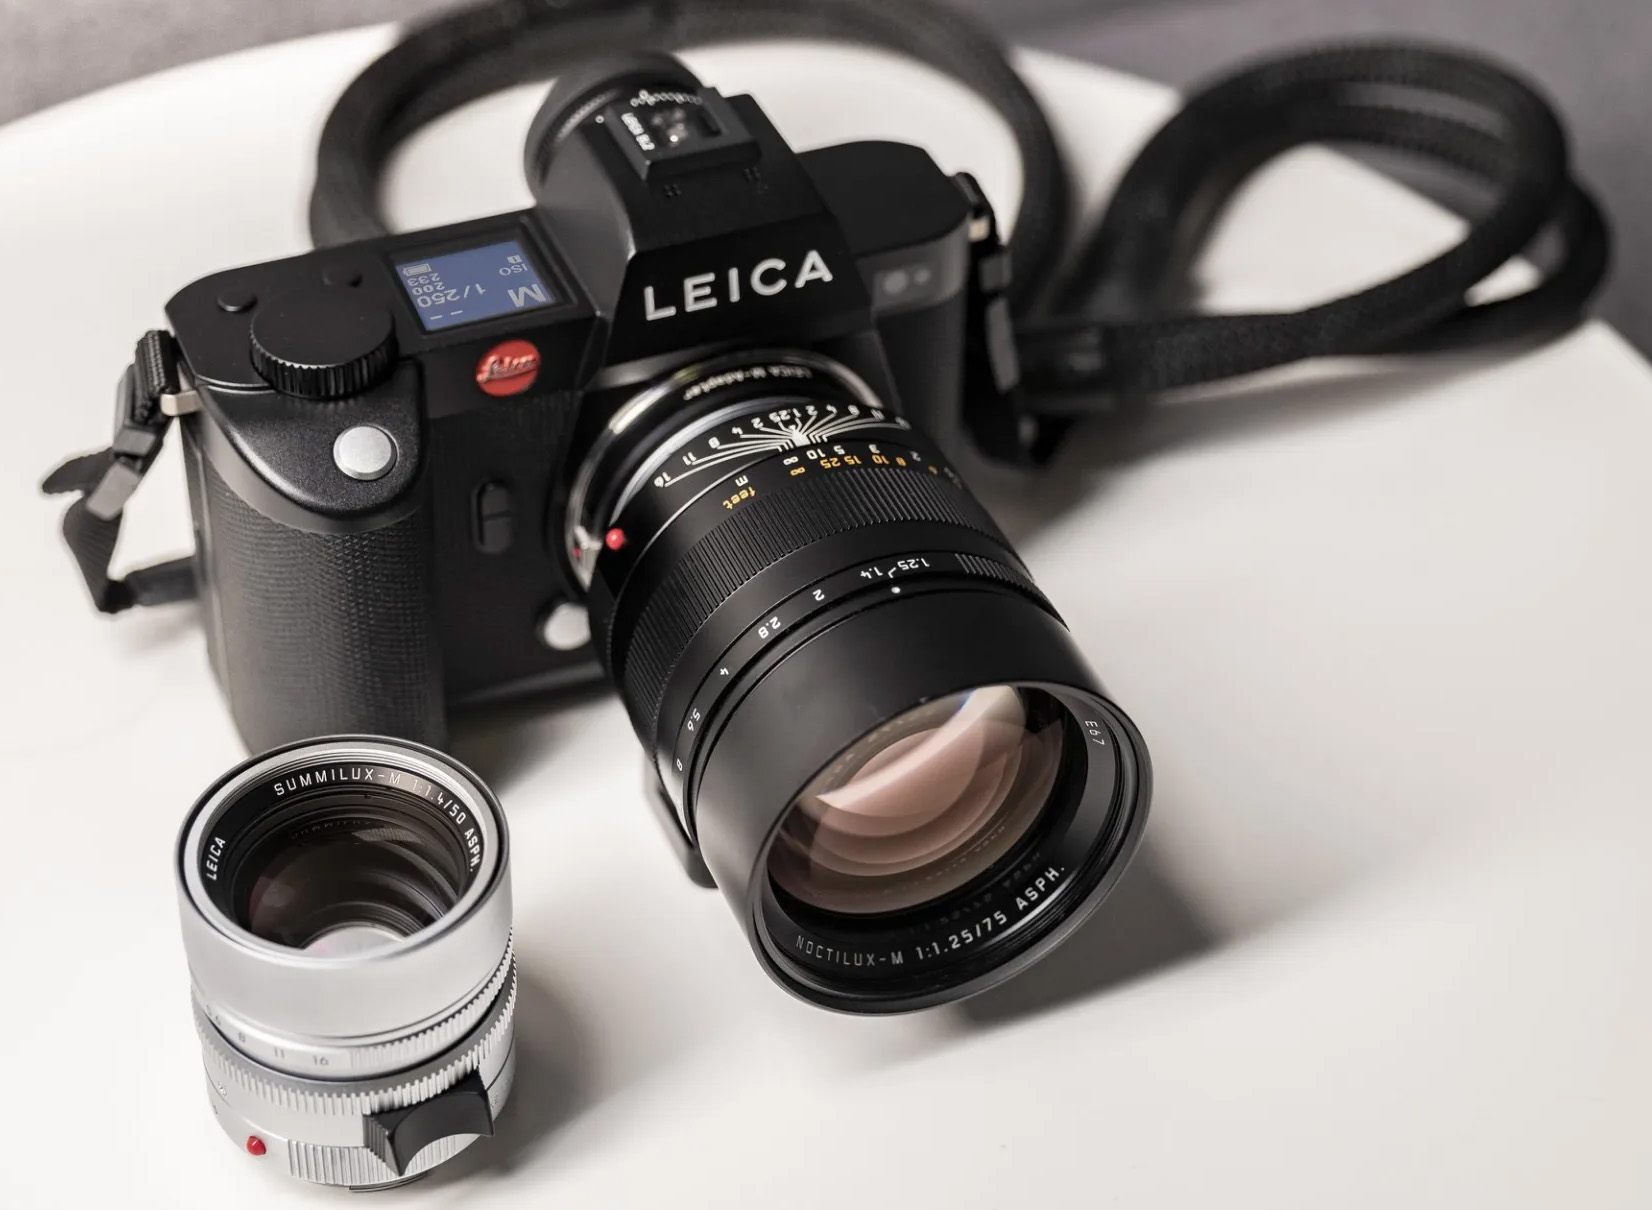 Leica SL3 